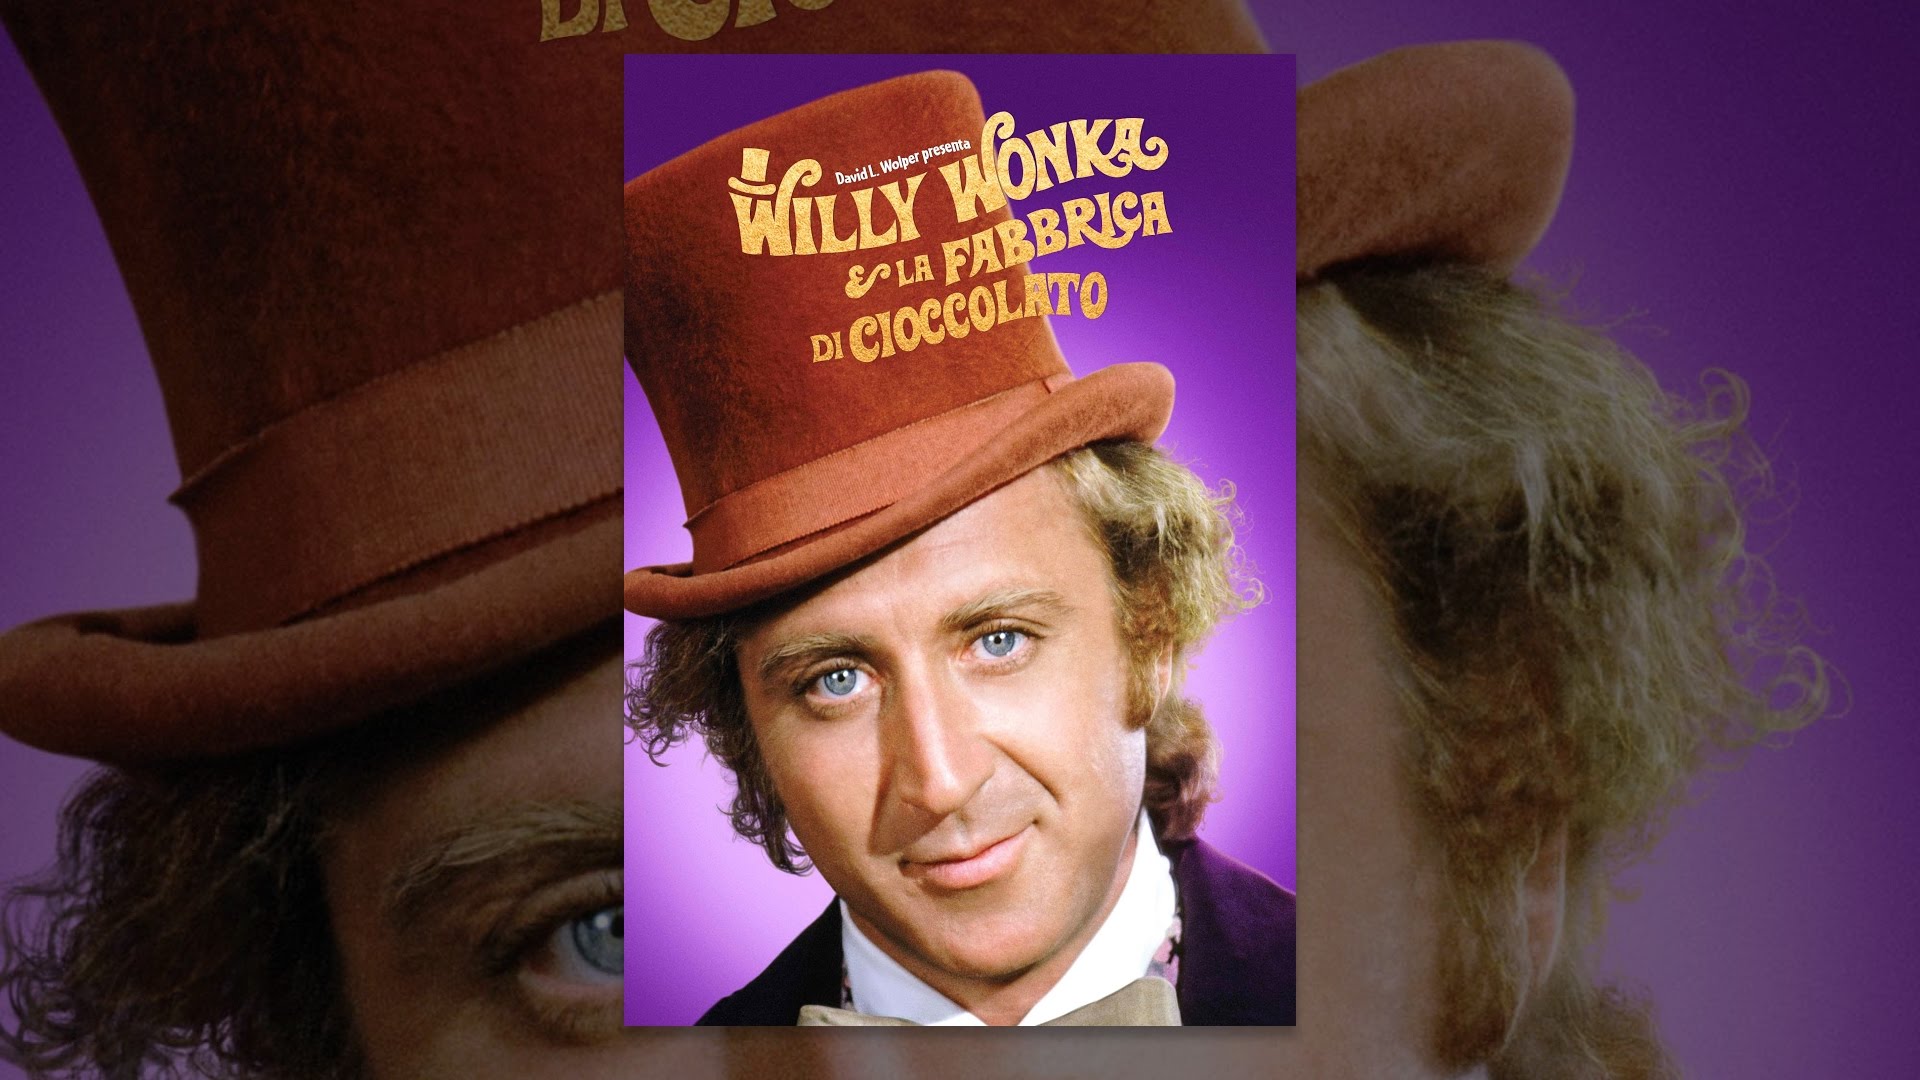 Willy Wonka e la fabbrica di cioccolato 